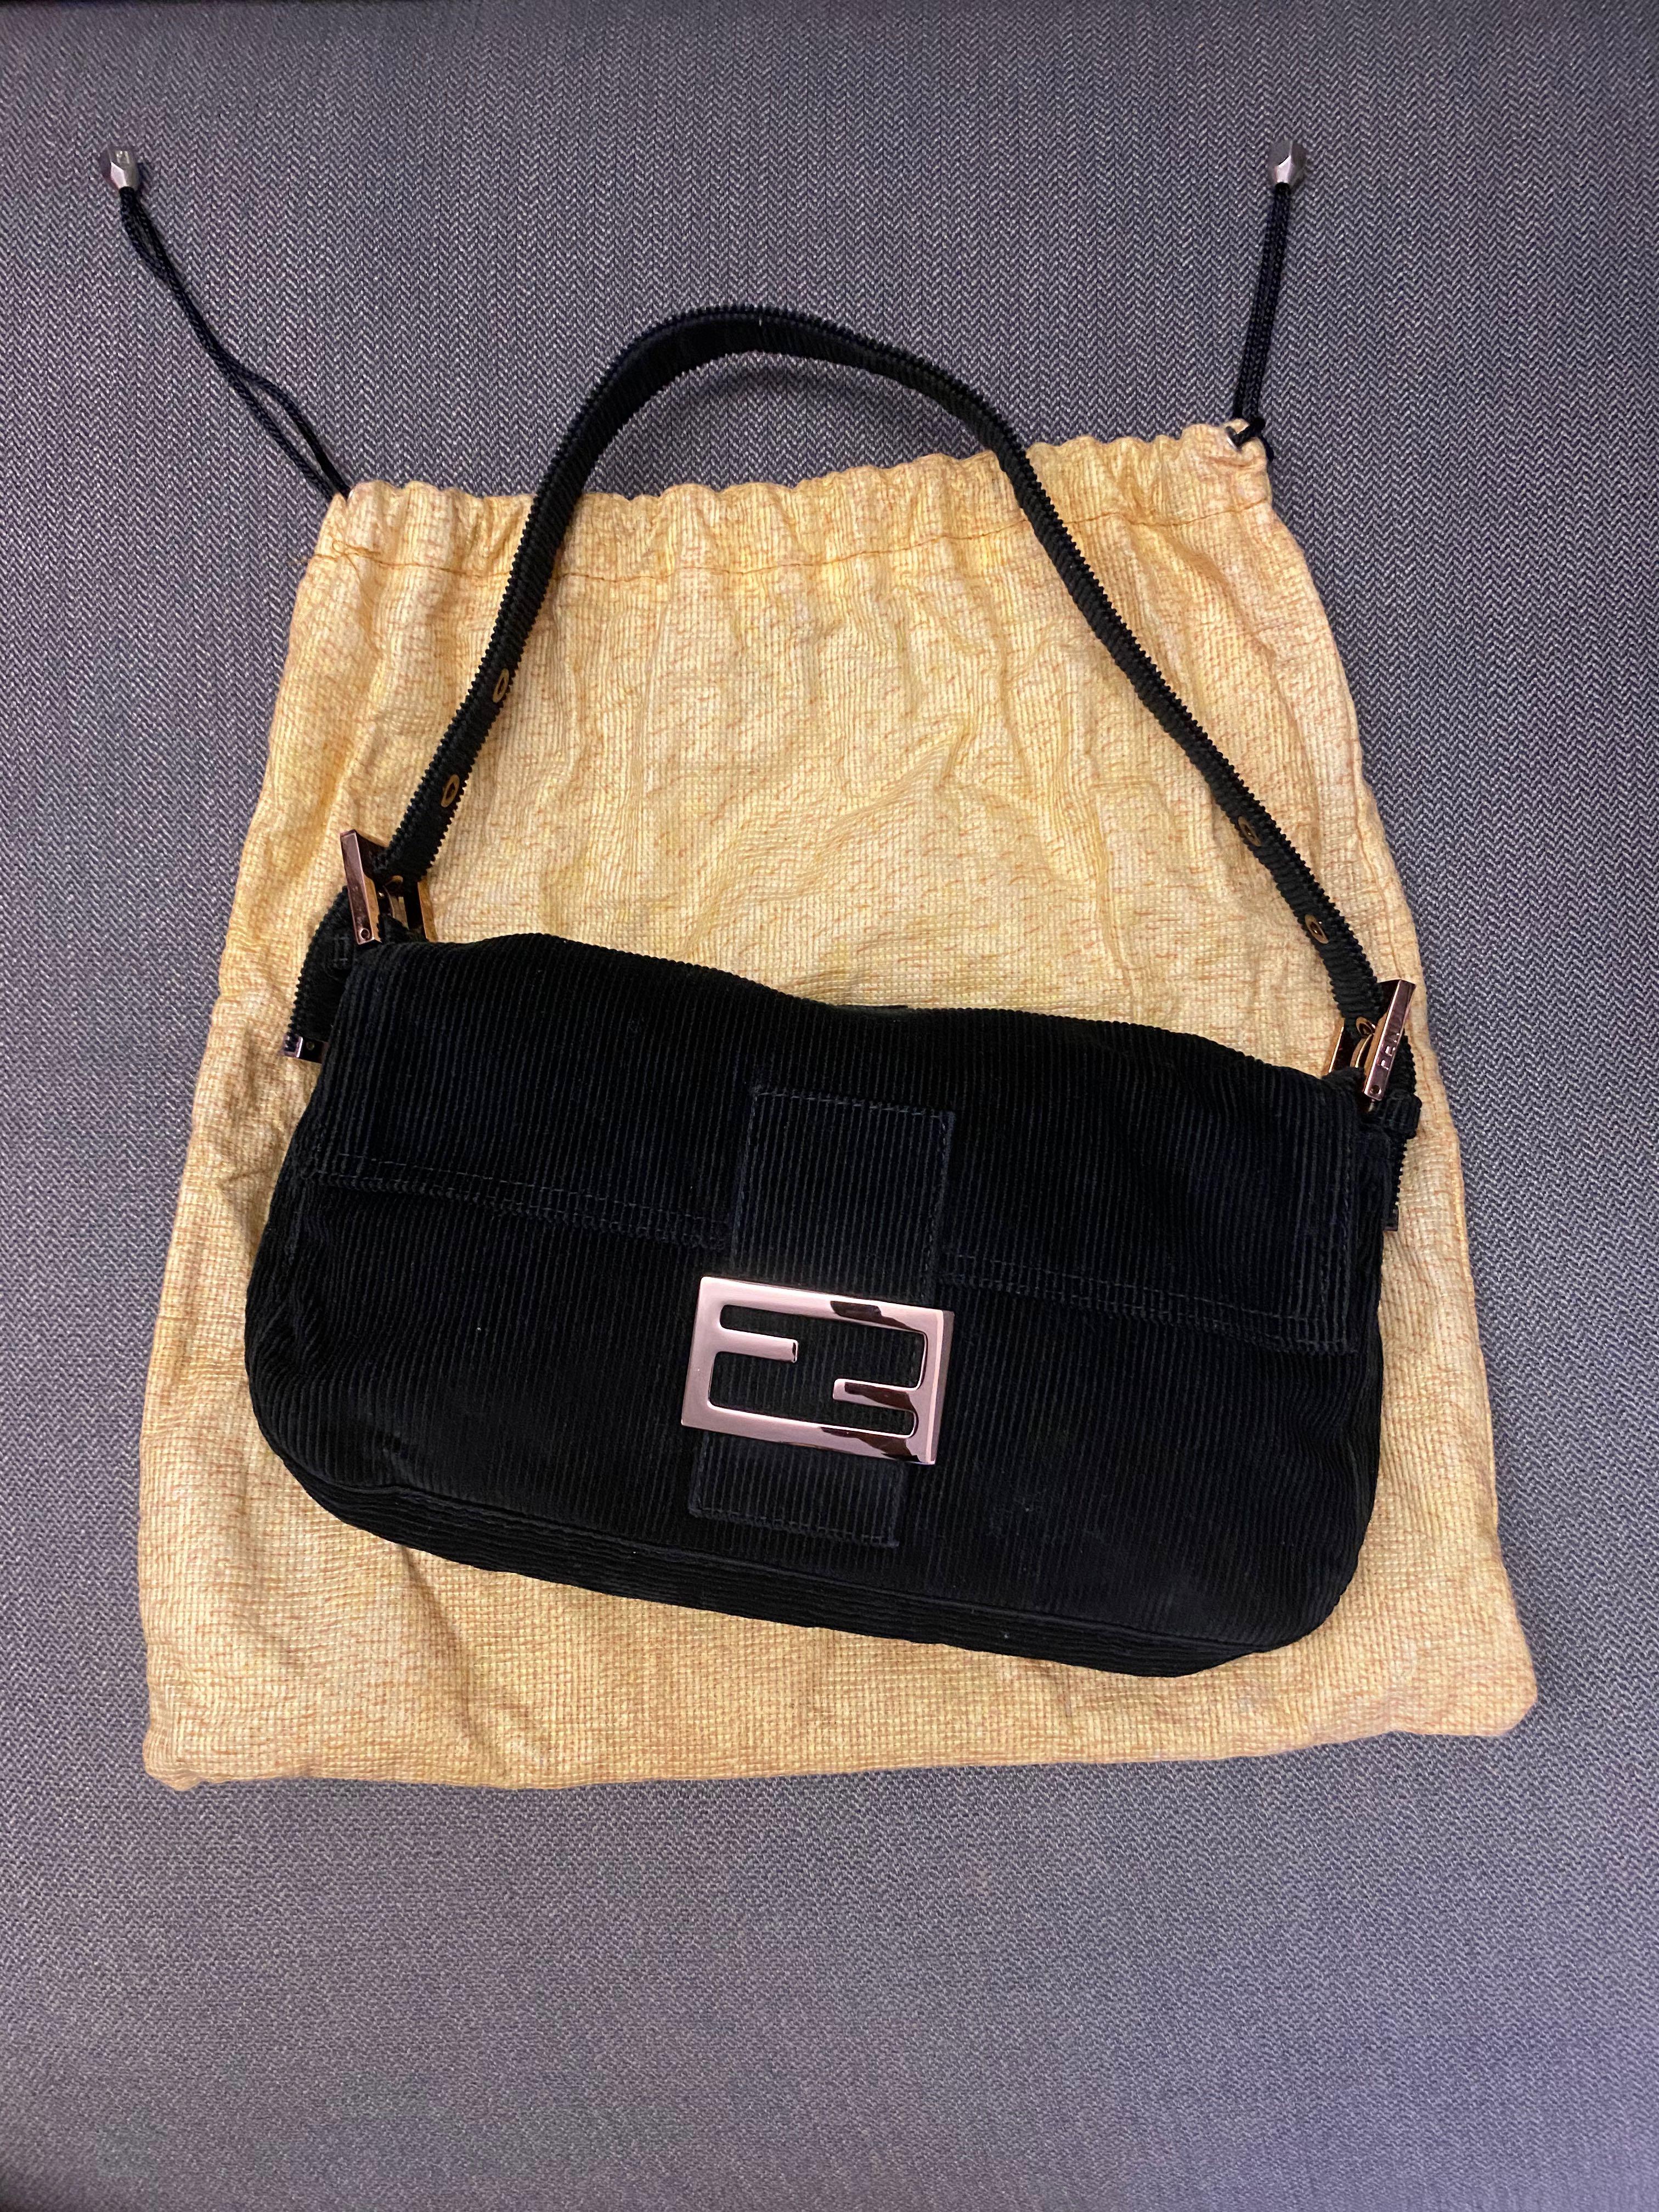 Black Fendi Baguette Handbag, Tokyo Roses Vintage